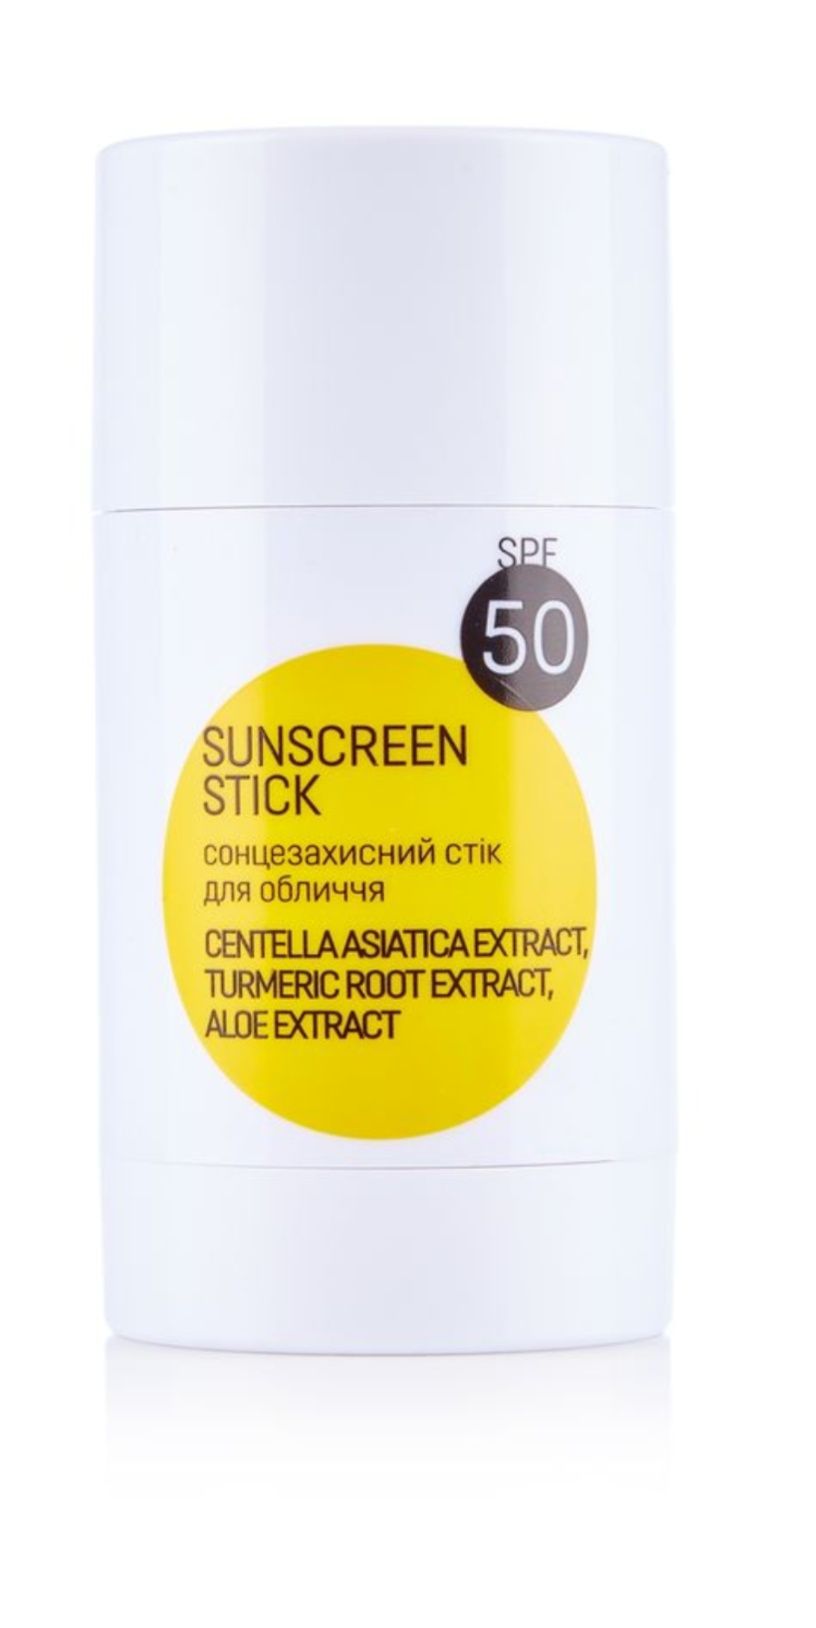 Сонцезахисний стик для обличчя ABOUT sun Sunscreen Stick SPF 50, 30 г